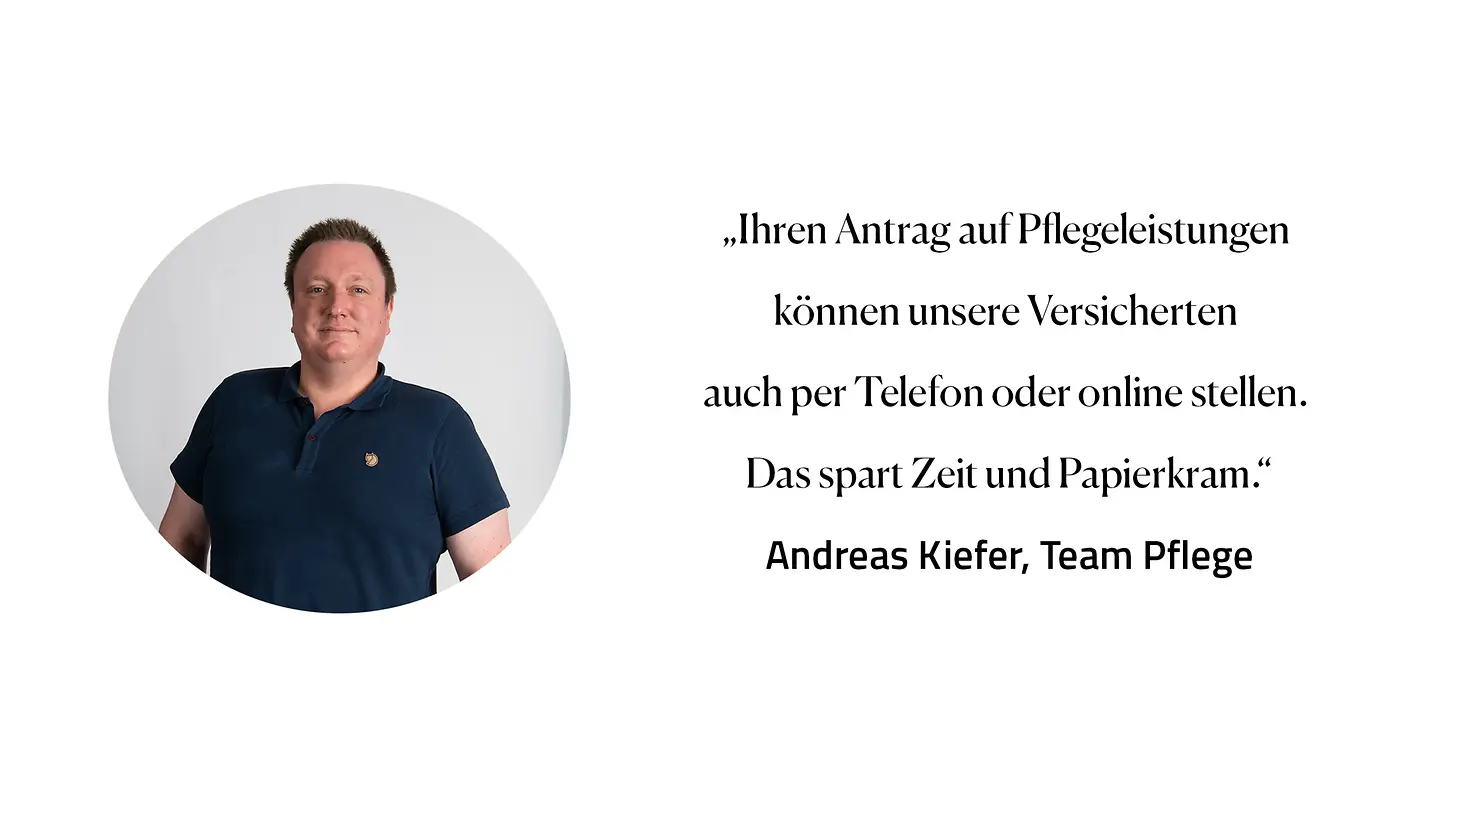 Zitat Andreas Kiefer, Team Pflege: "Ihren Antrag auf Pflegeleistungen können unsere Versicherten auch per Telefon oder online stellen. Das spart Zeit und Papierkram."